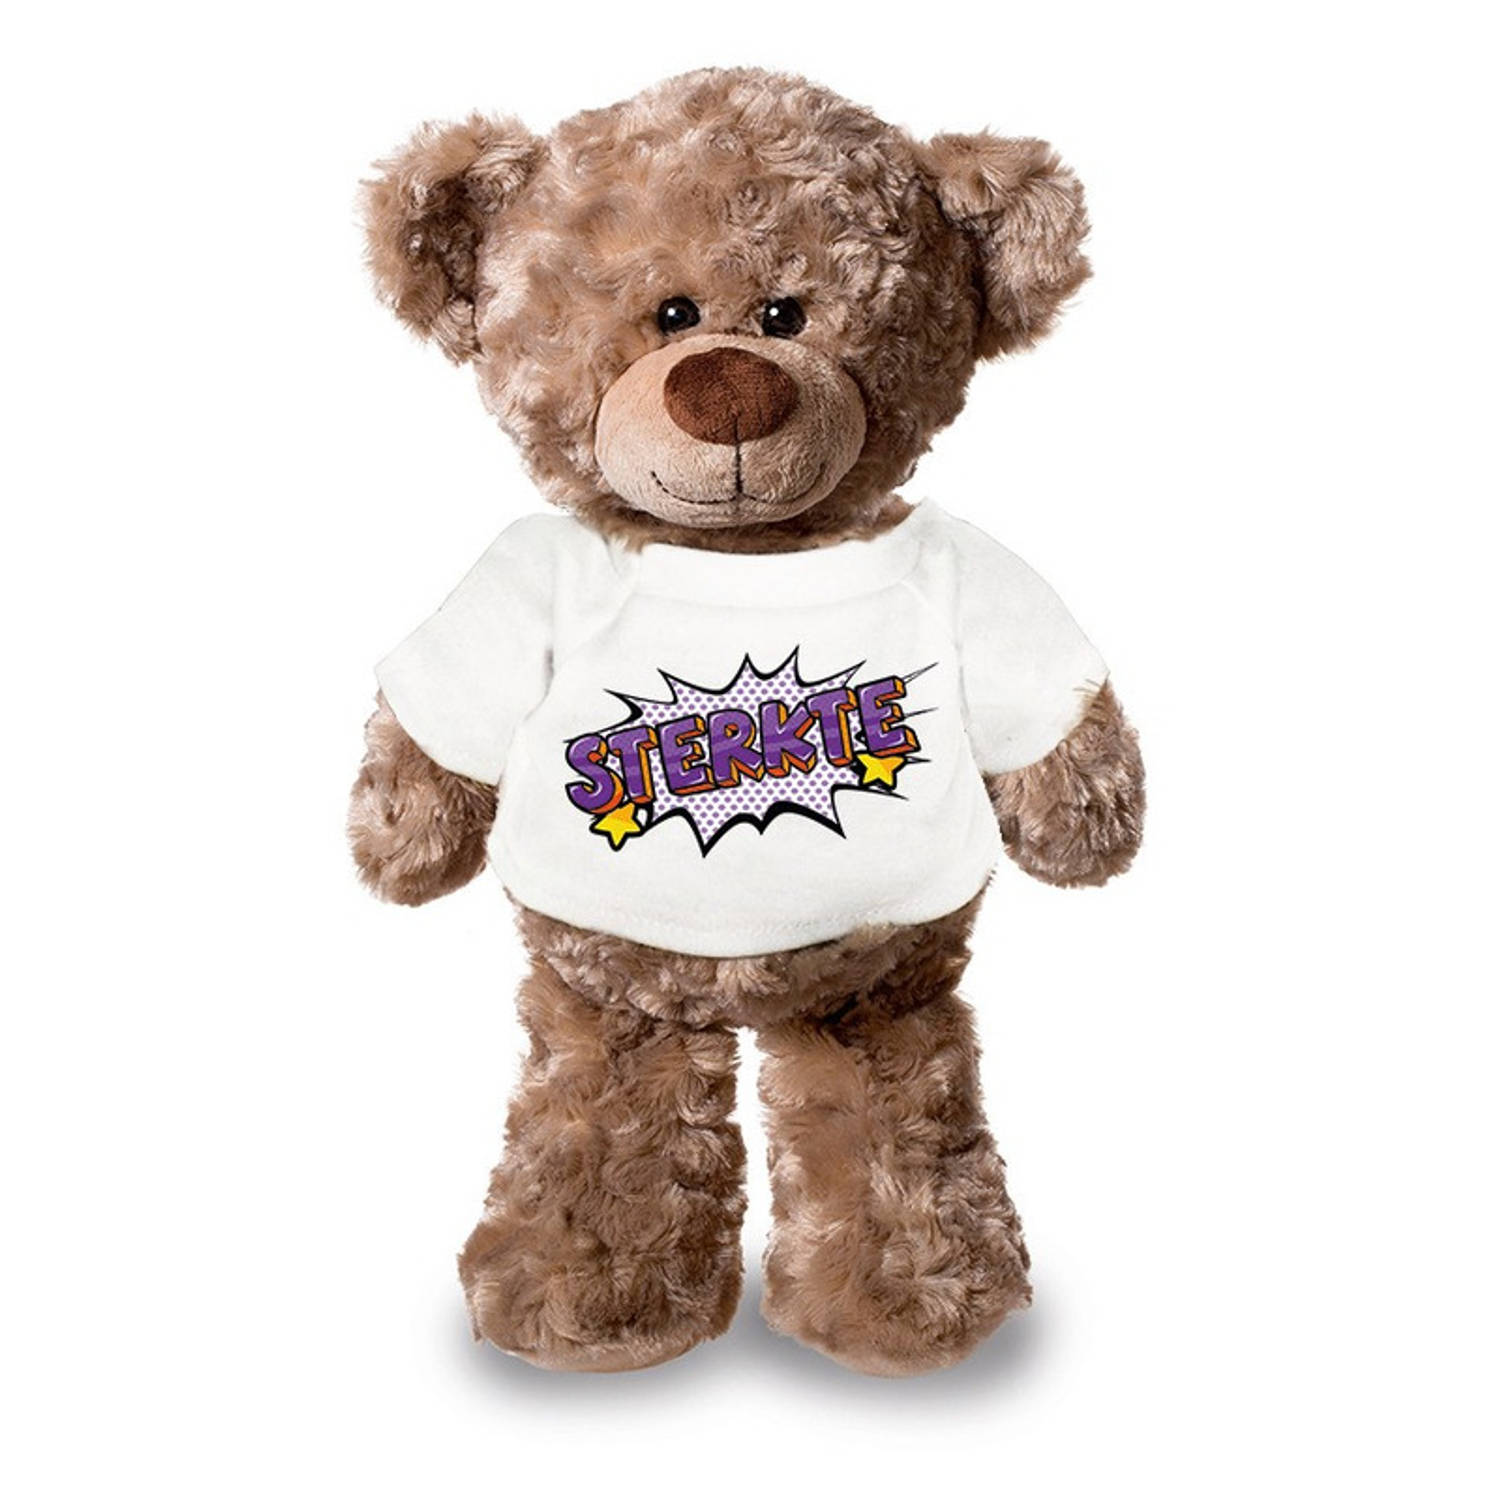 Sterkte pluche teddybeer knuffel 24 cm met wit t-shirt - Knuffelberen